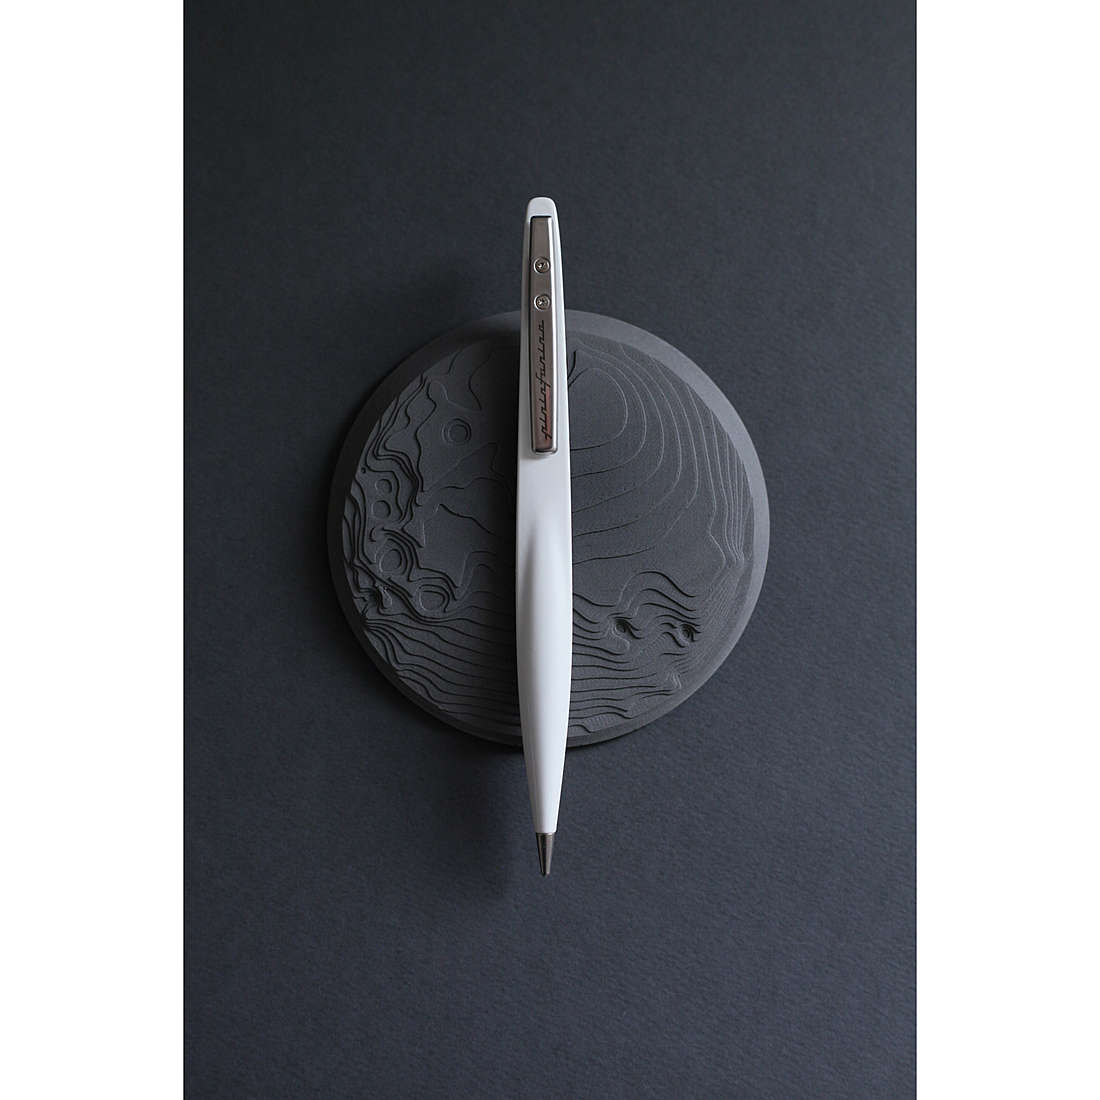 Individualisierte Stift mit Ethergraf von Pininfarina aus der Space 8033549713966